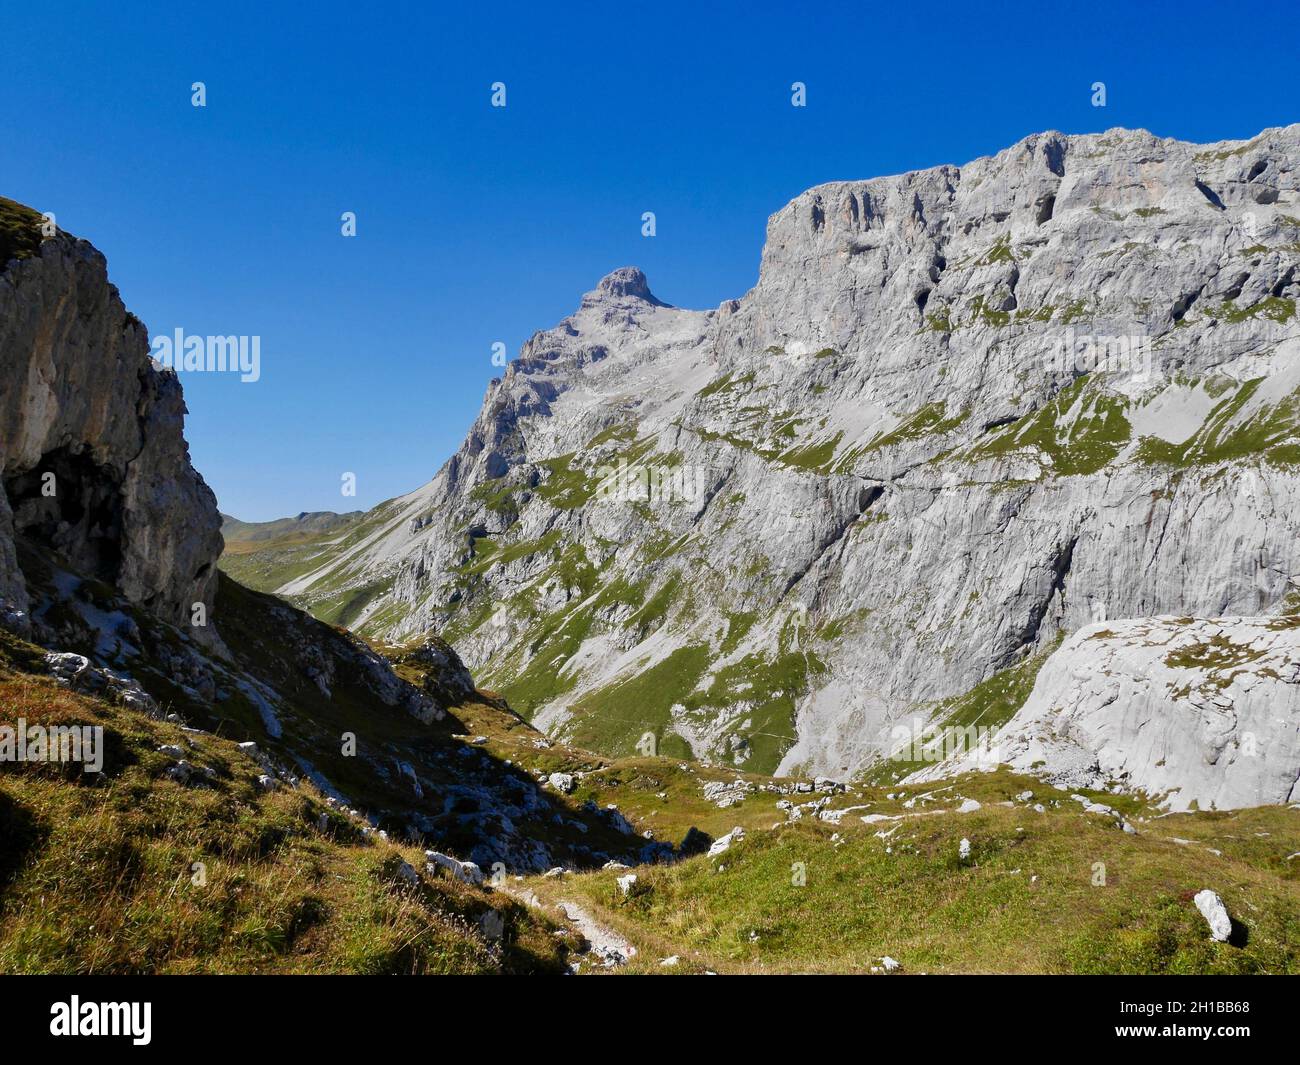 Hiking path through rocky landscape surrounded by Sulzfluh and Scheienfluh in Praettigau, Graubuenden, Switzerland. Stock Photo